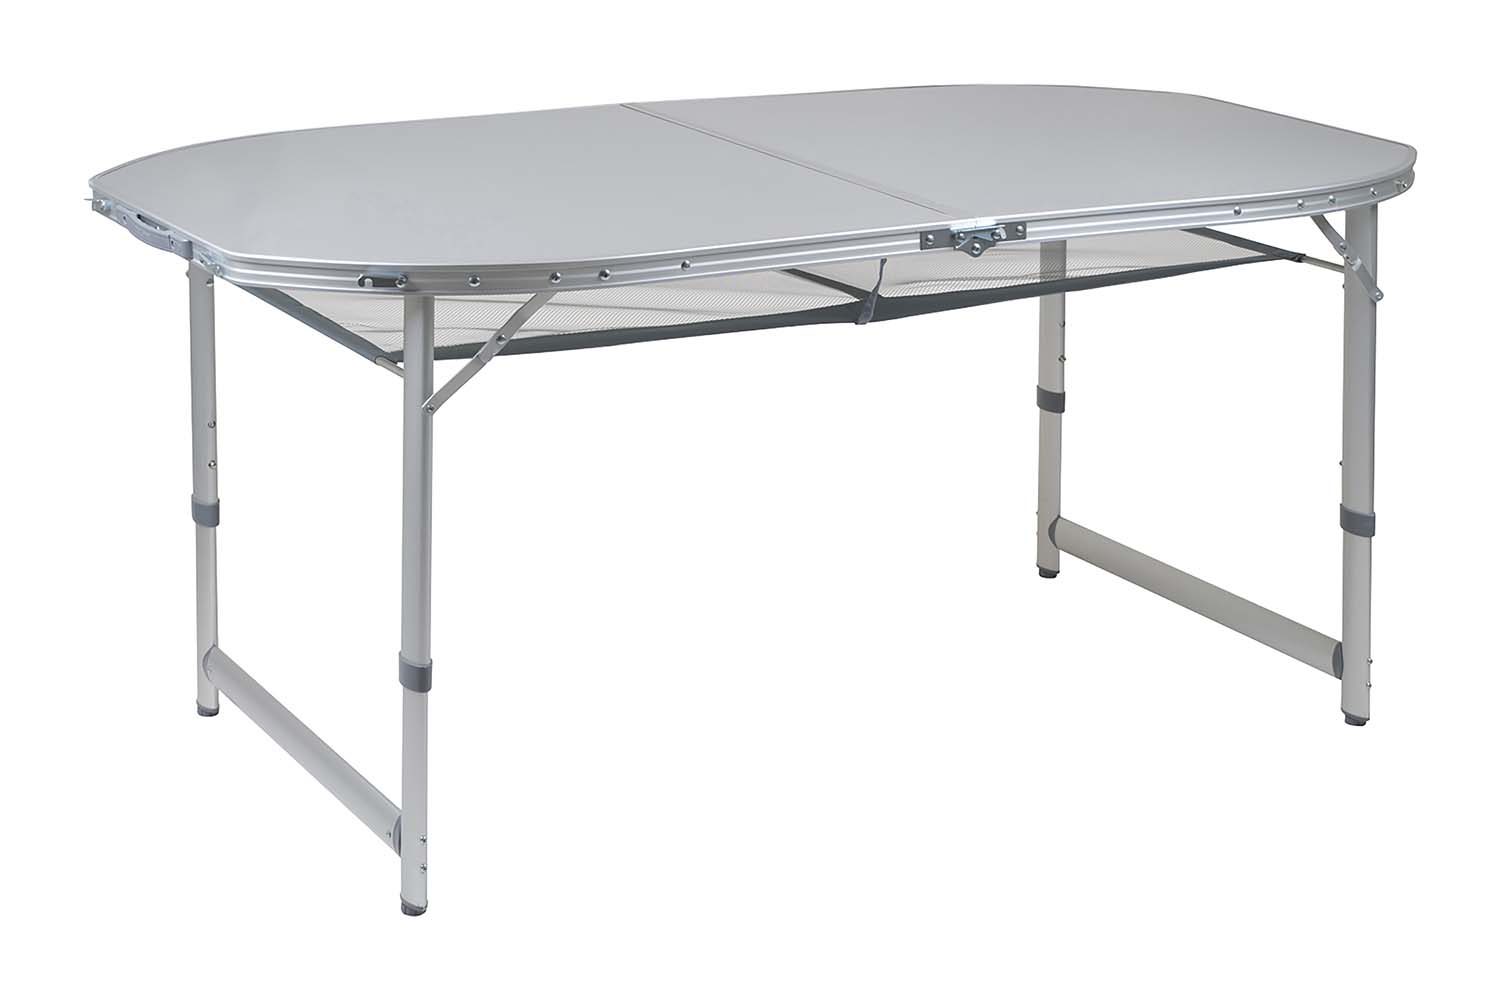 1404405 Een stabiele ovalen campingtafel met een watervast en hittebestendig tafelblad. Deze tafel heeft verstelbare poten, stelschroeven voor extra fijnstelling en een deelbaar tafelblad. Hierdoor is de tafel eenvoudig op te vouwen tot koffermodel. Gemaakt van lichtgewicht aluminium met een watervast en hittebestendig tafelblad. De poten zijn in 3 verschillende hoogtes verstelbaar (55/65/70 cm). Onder het tafelblad is een net bevestigd om spullen op te bergen. Ingeklapt (lxbxh): 80x75x7 centimeter.